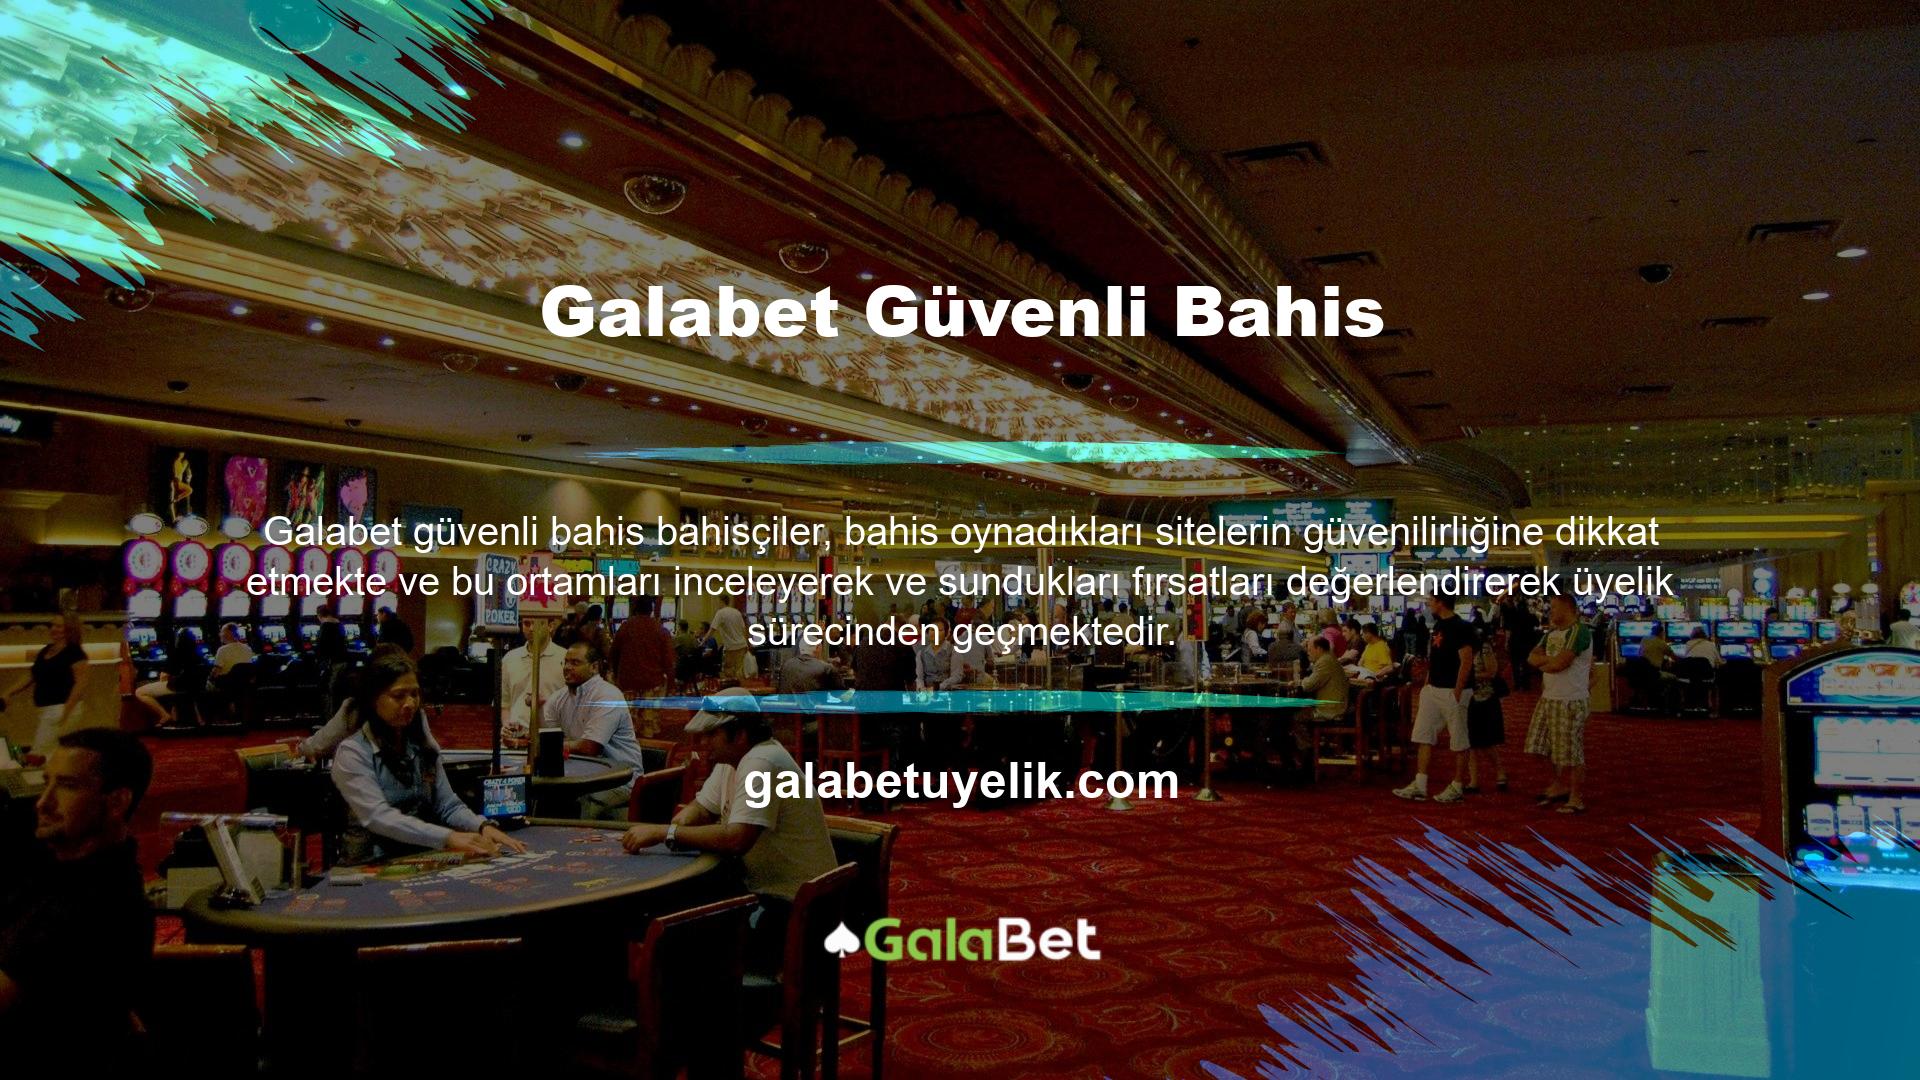 Bahis sitesi Galabet, ana sayfasındaki geniş hizmet seçenekleri ile canlı oyun ve casino sektörüne hitap eden diğer bahis sitelerine göre üyenin deneyimine daha fazla değer verdiğini göstermektedir